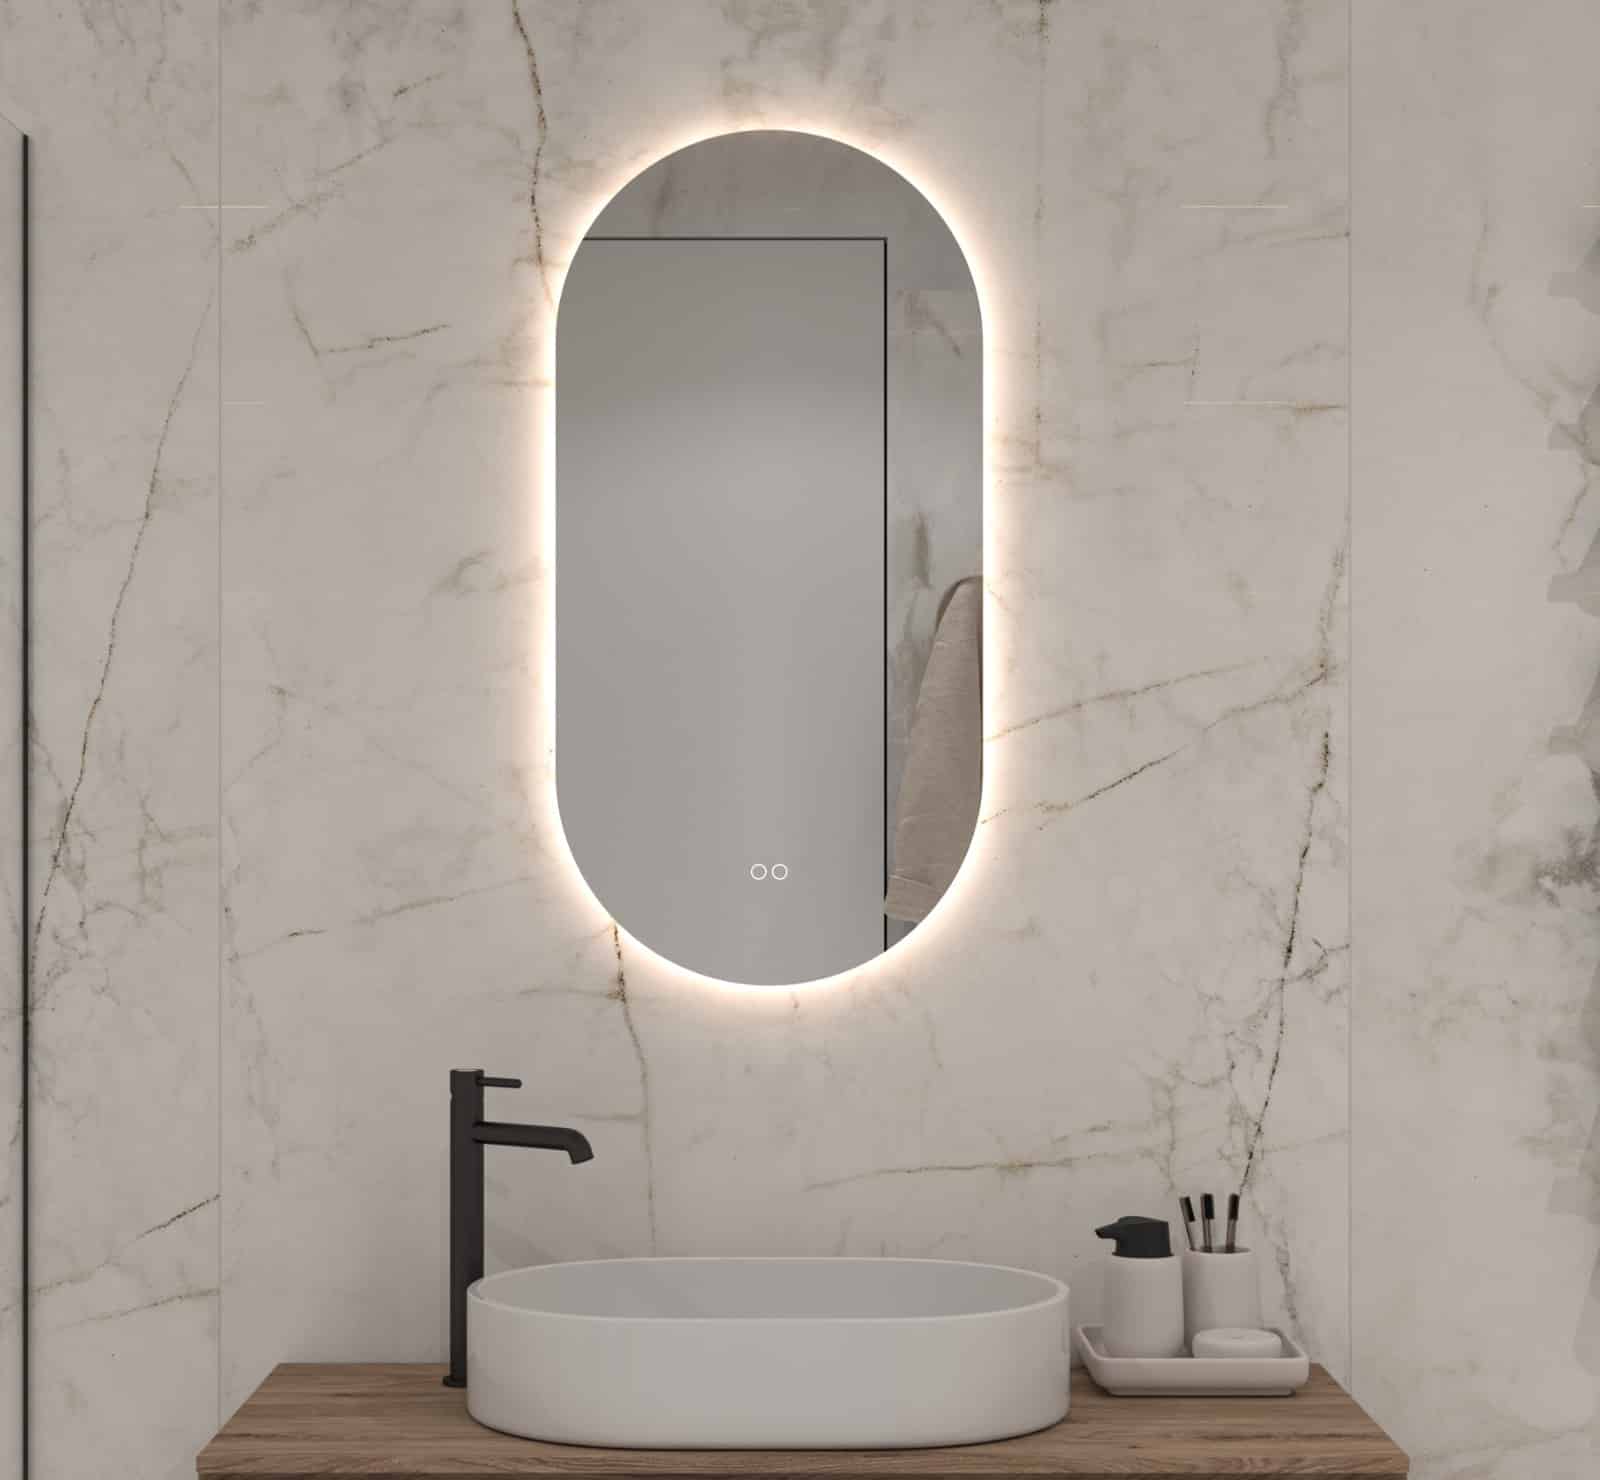 Verticale ovale badkamerspiegel met ingebouwde verlichting, spiegelverwarming en dubbele touch schakelaar met dimfunctie en instelbare lichtkleur